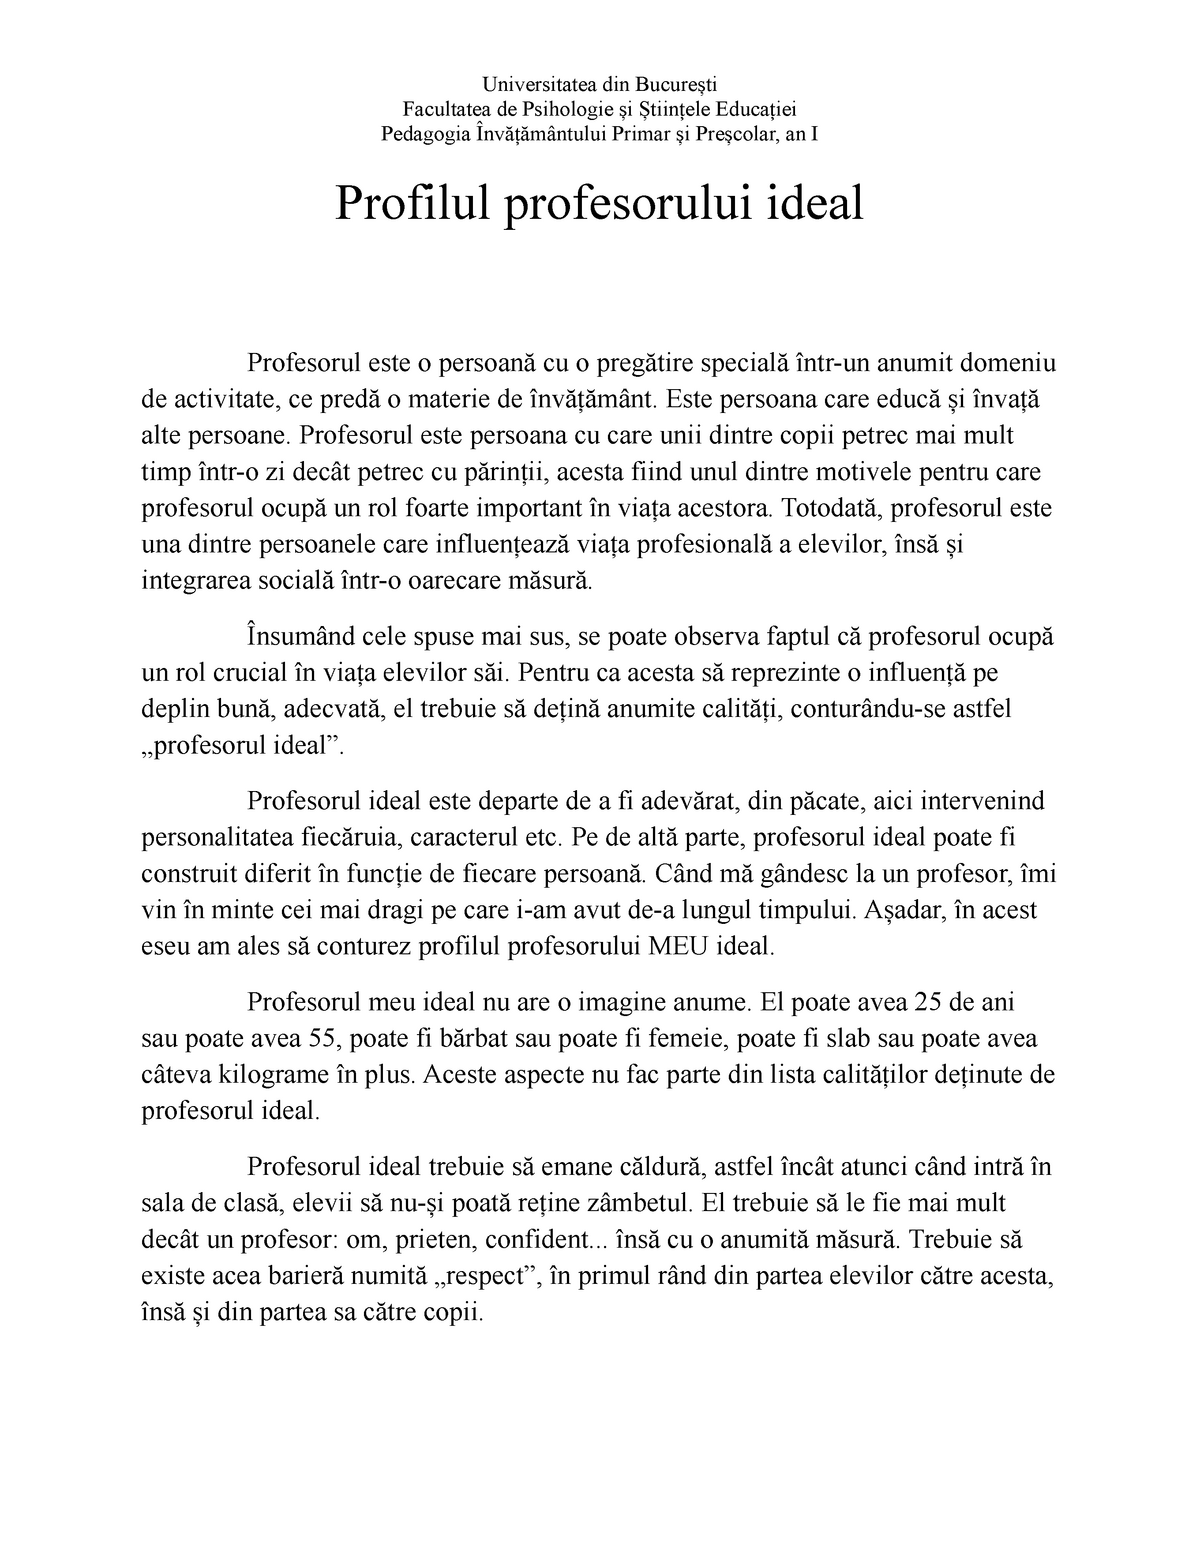 Compose Worthless Pathetic Profilul profesorului ideal - Universitatea din București Facultatea de  Psihologie și Științele - StuDocu